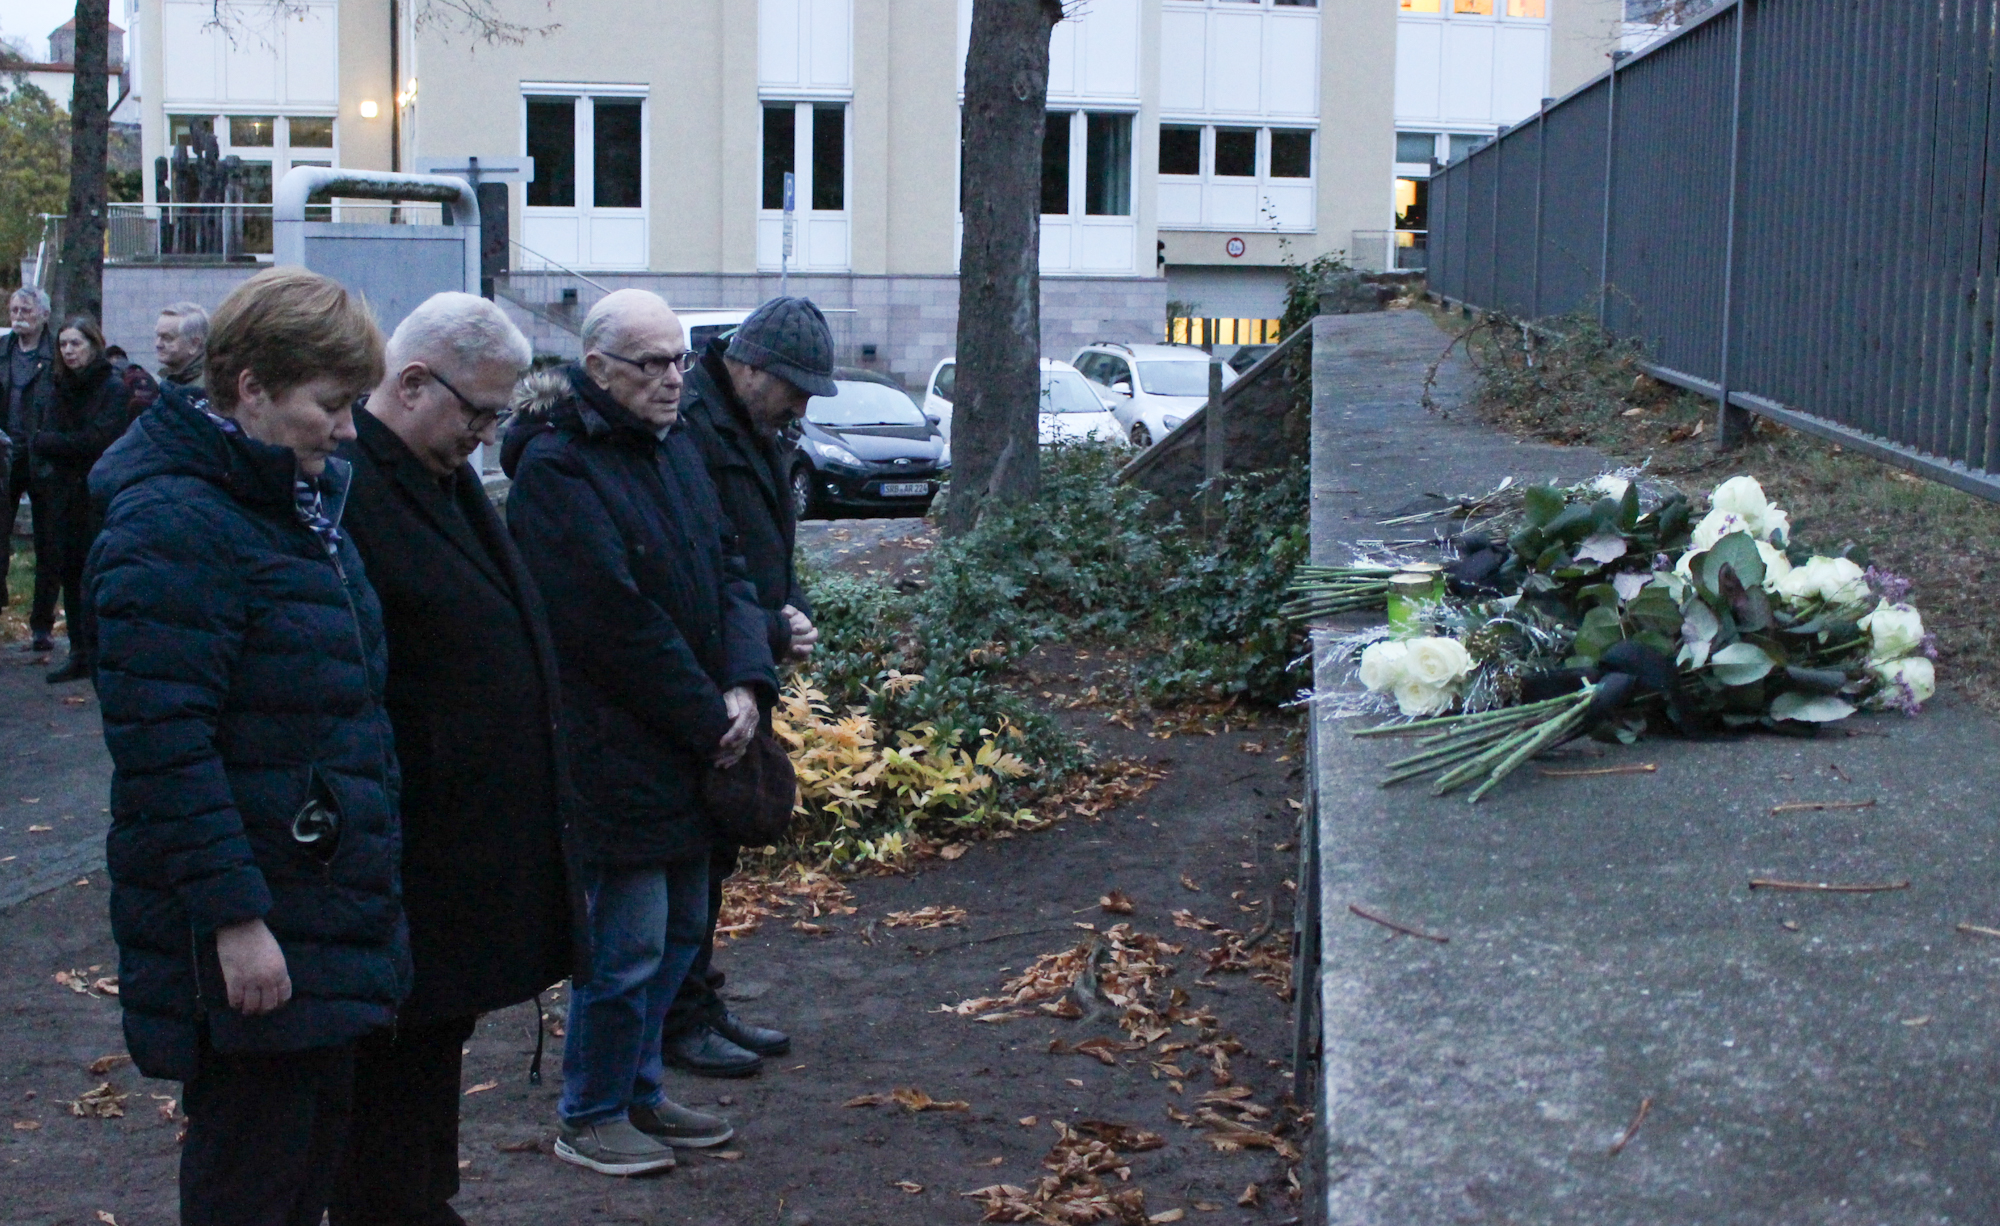 Bürgermeisterin Elke Stadeler,Stadtverordnetenvorsteher Steffen Schuster, Ehrenbürger Kurt Schornsheim und Pfarrer Tillmann Kuhn haben Blumen niedergelegt